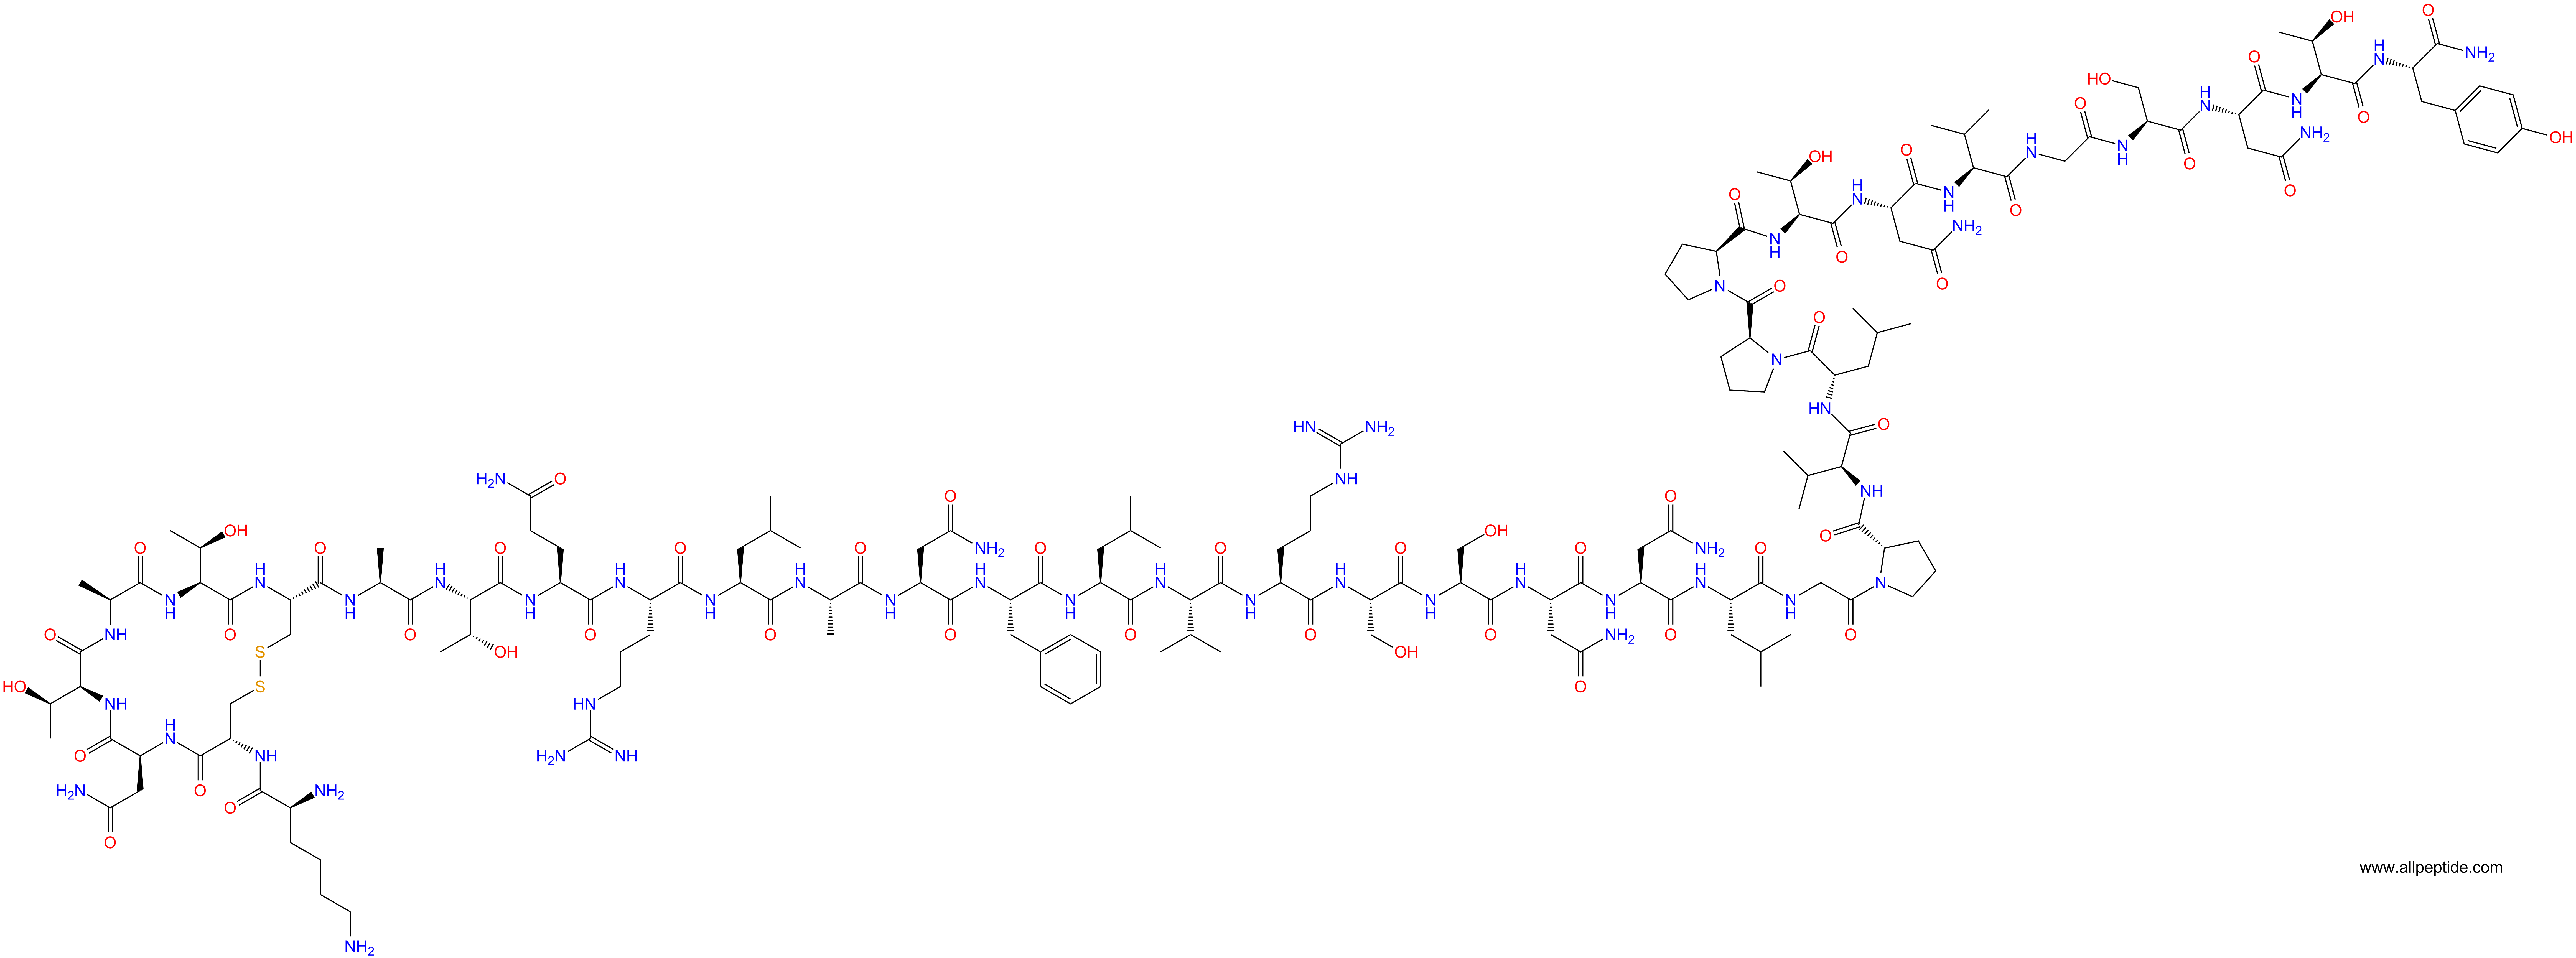 多肽生物产品Amylin (mouse, rat)124447-81-0